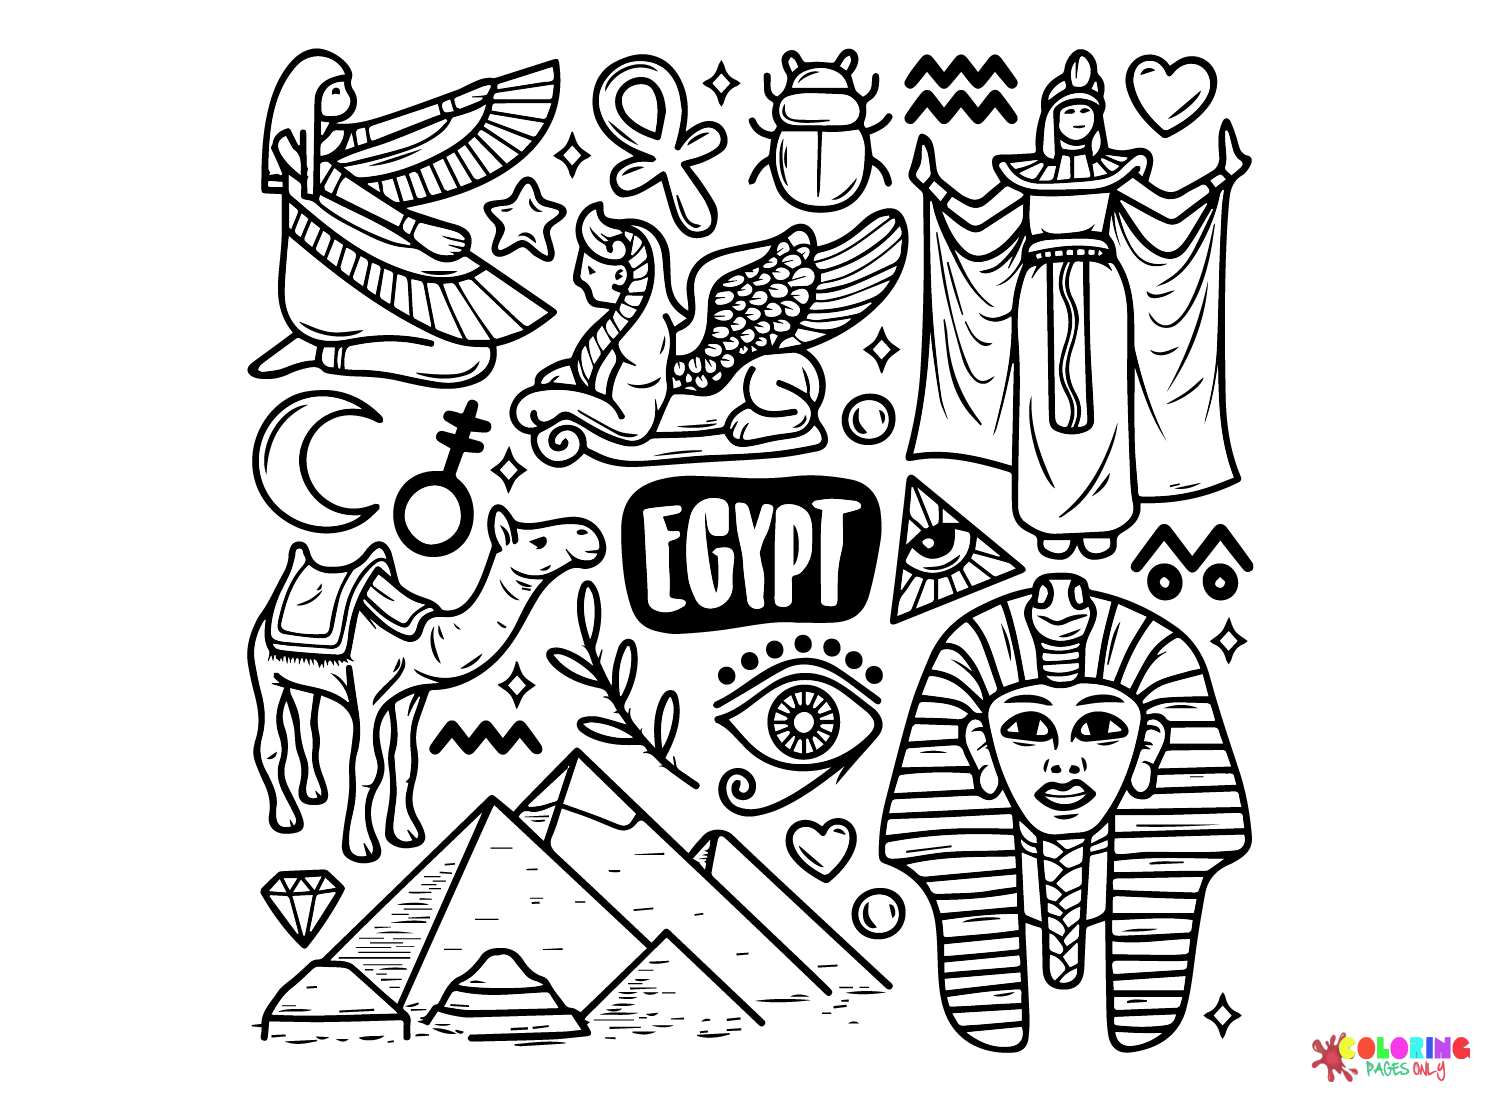 Iconos vectoriales gratuitos de Egipto Doodle dibujado a mano del antiguo Egipto